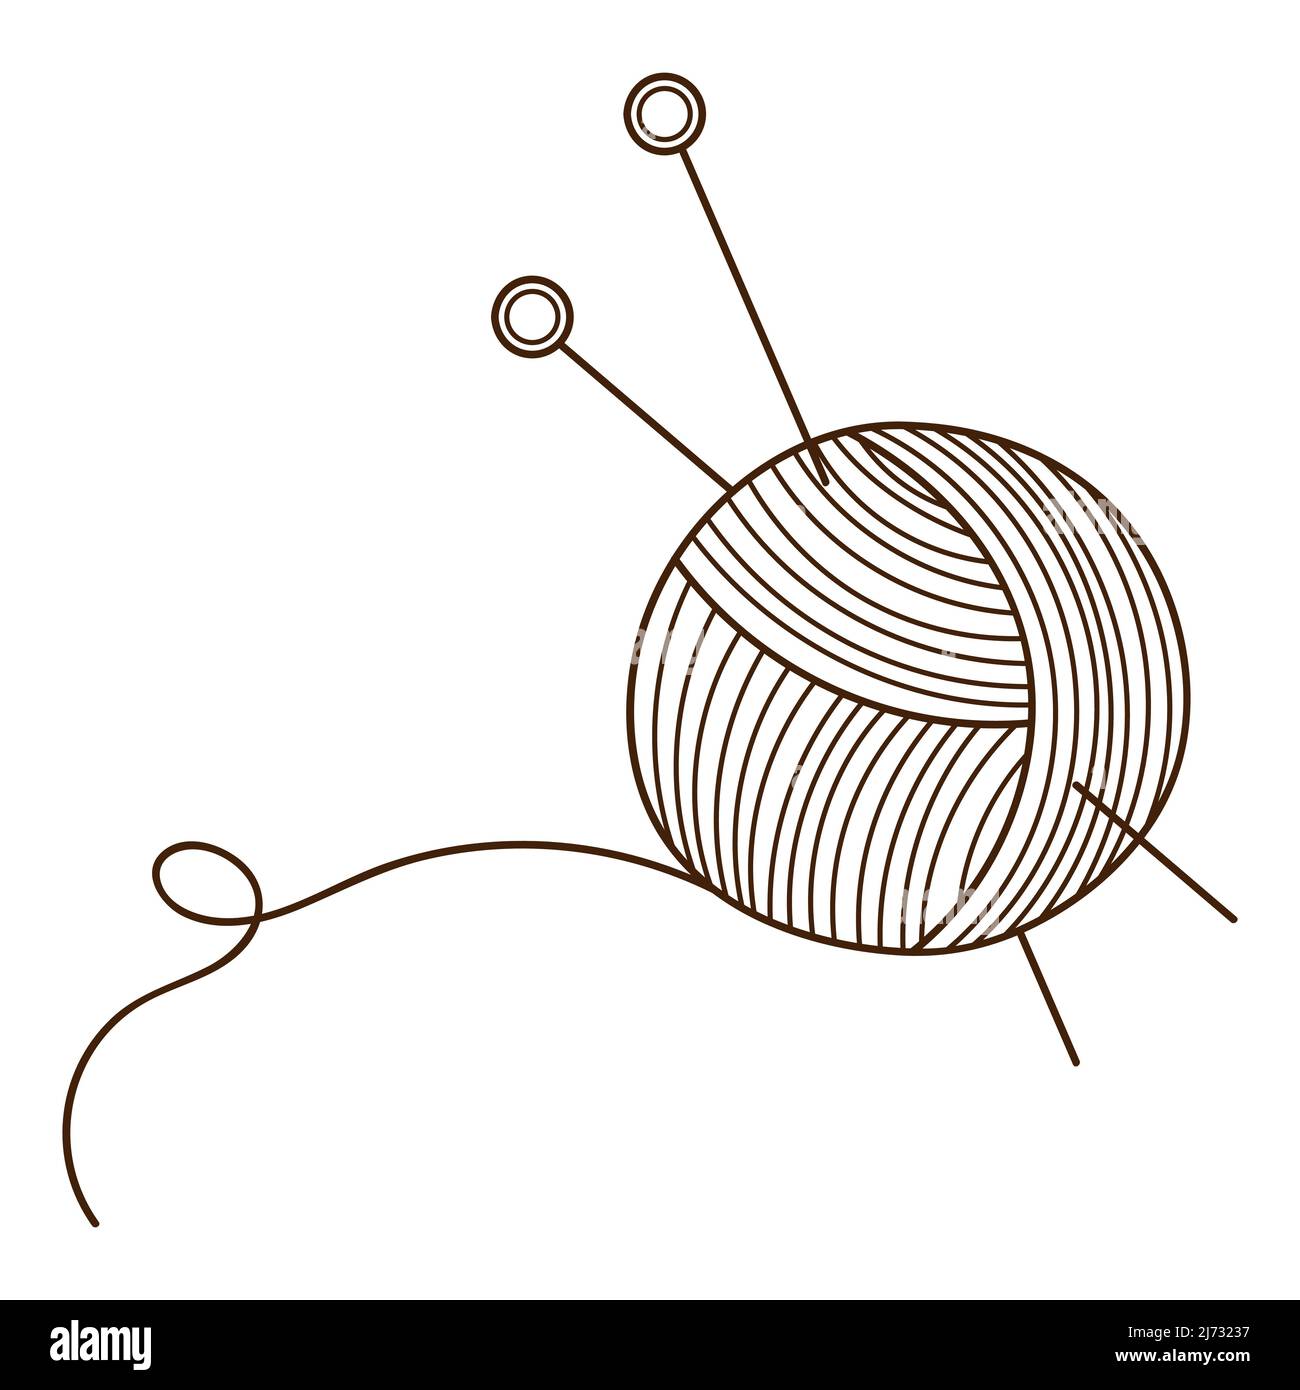 Ein Knäuel aus Garn mit Stricknadeln. Nadelarbeit, Stricken. Designelement mit Umriss. Doodle, handgezeichnet. Schwarz-weiße Vektorgrafik. Isolieren Stock Vektor